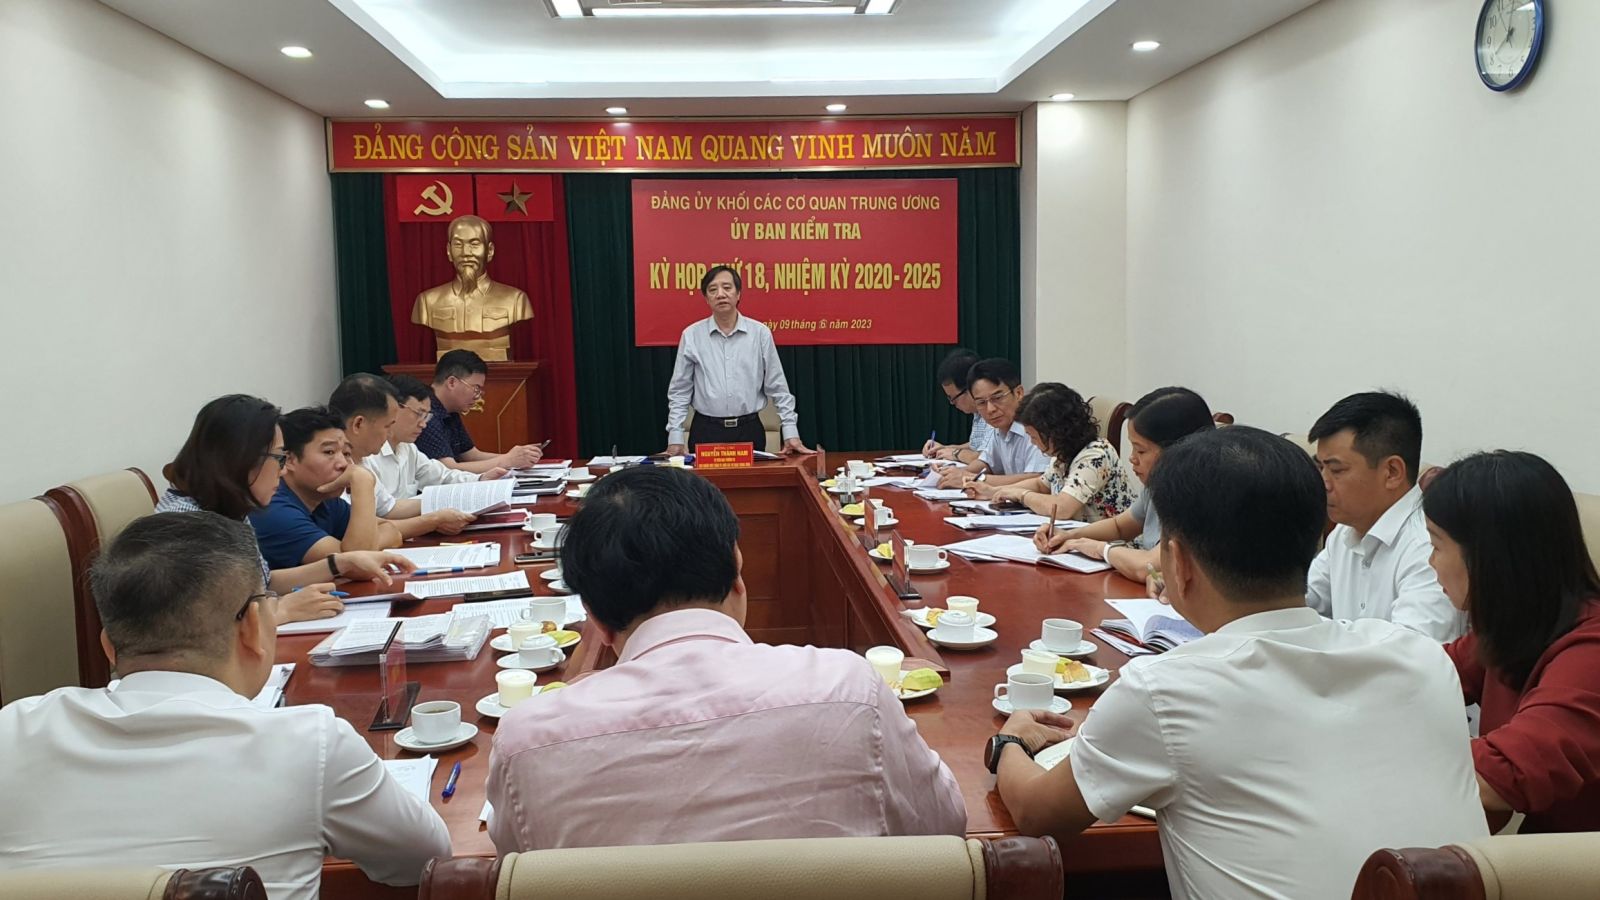 Giám đốc Bệnh viện Thể thao Việt Nam bị cách chức vụ Đảng - Ảnh 1.